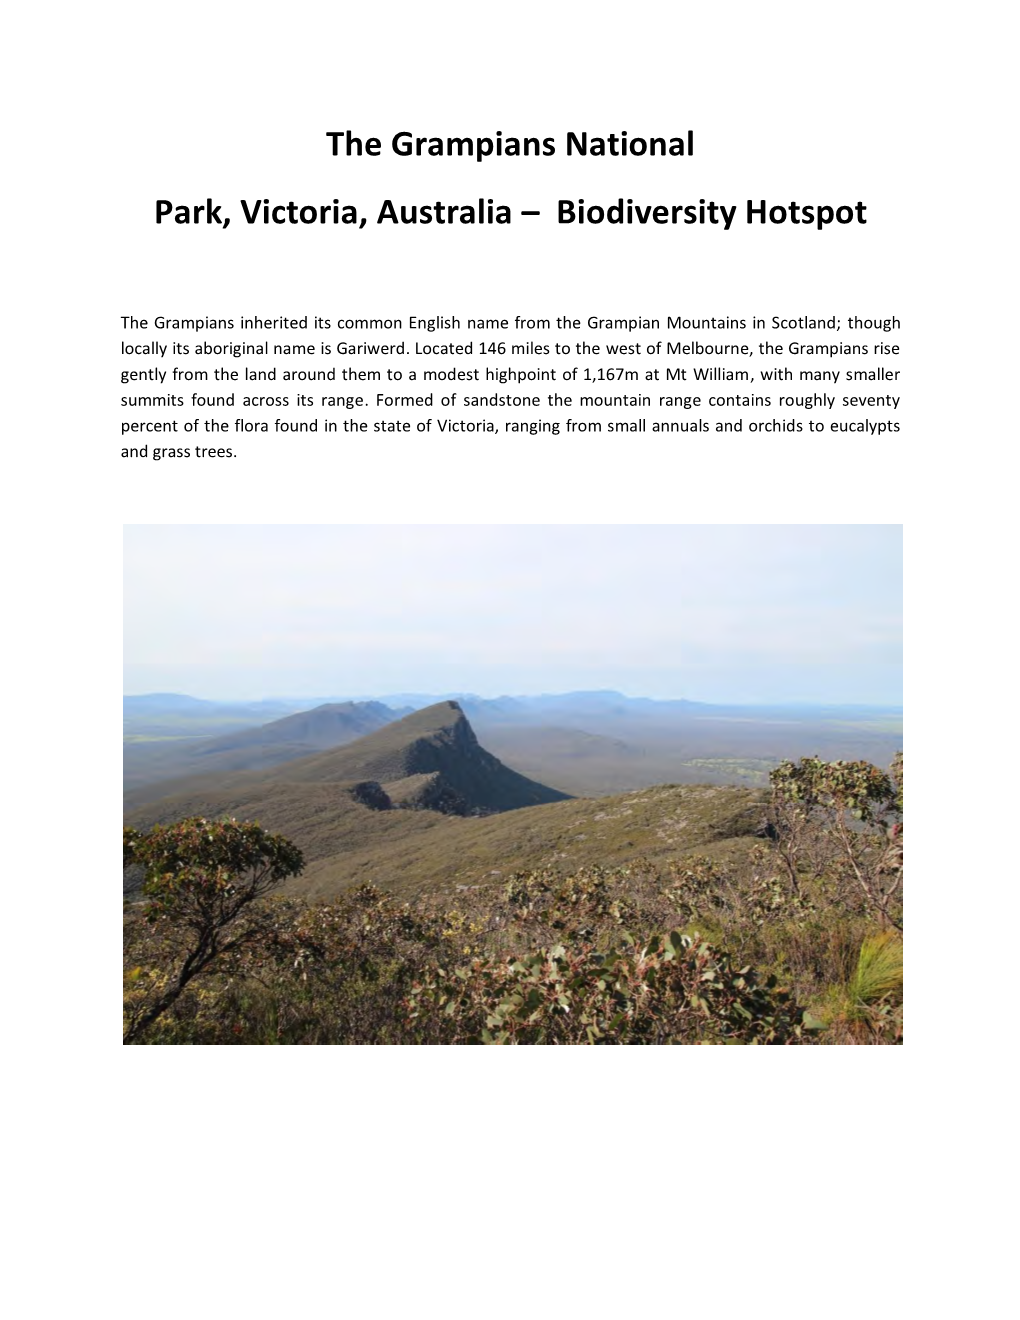 The Grampians National Park, Victoria, Australia – Biodiversity Hotspot